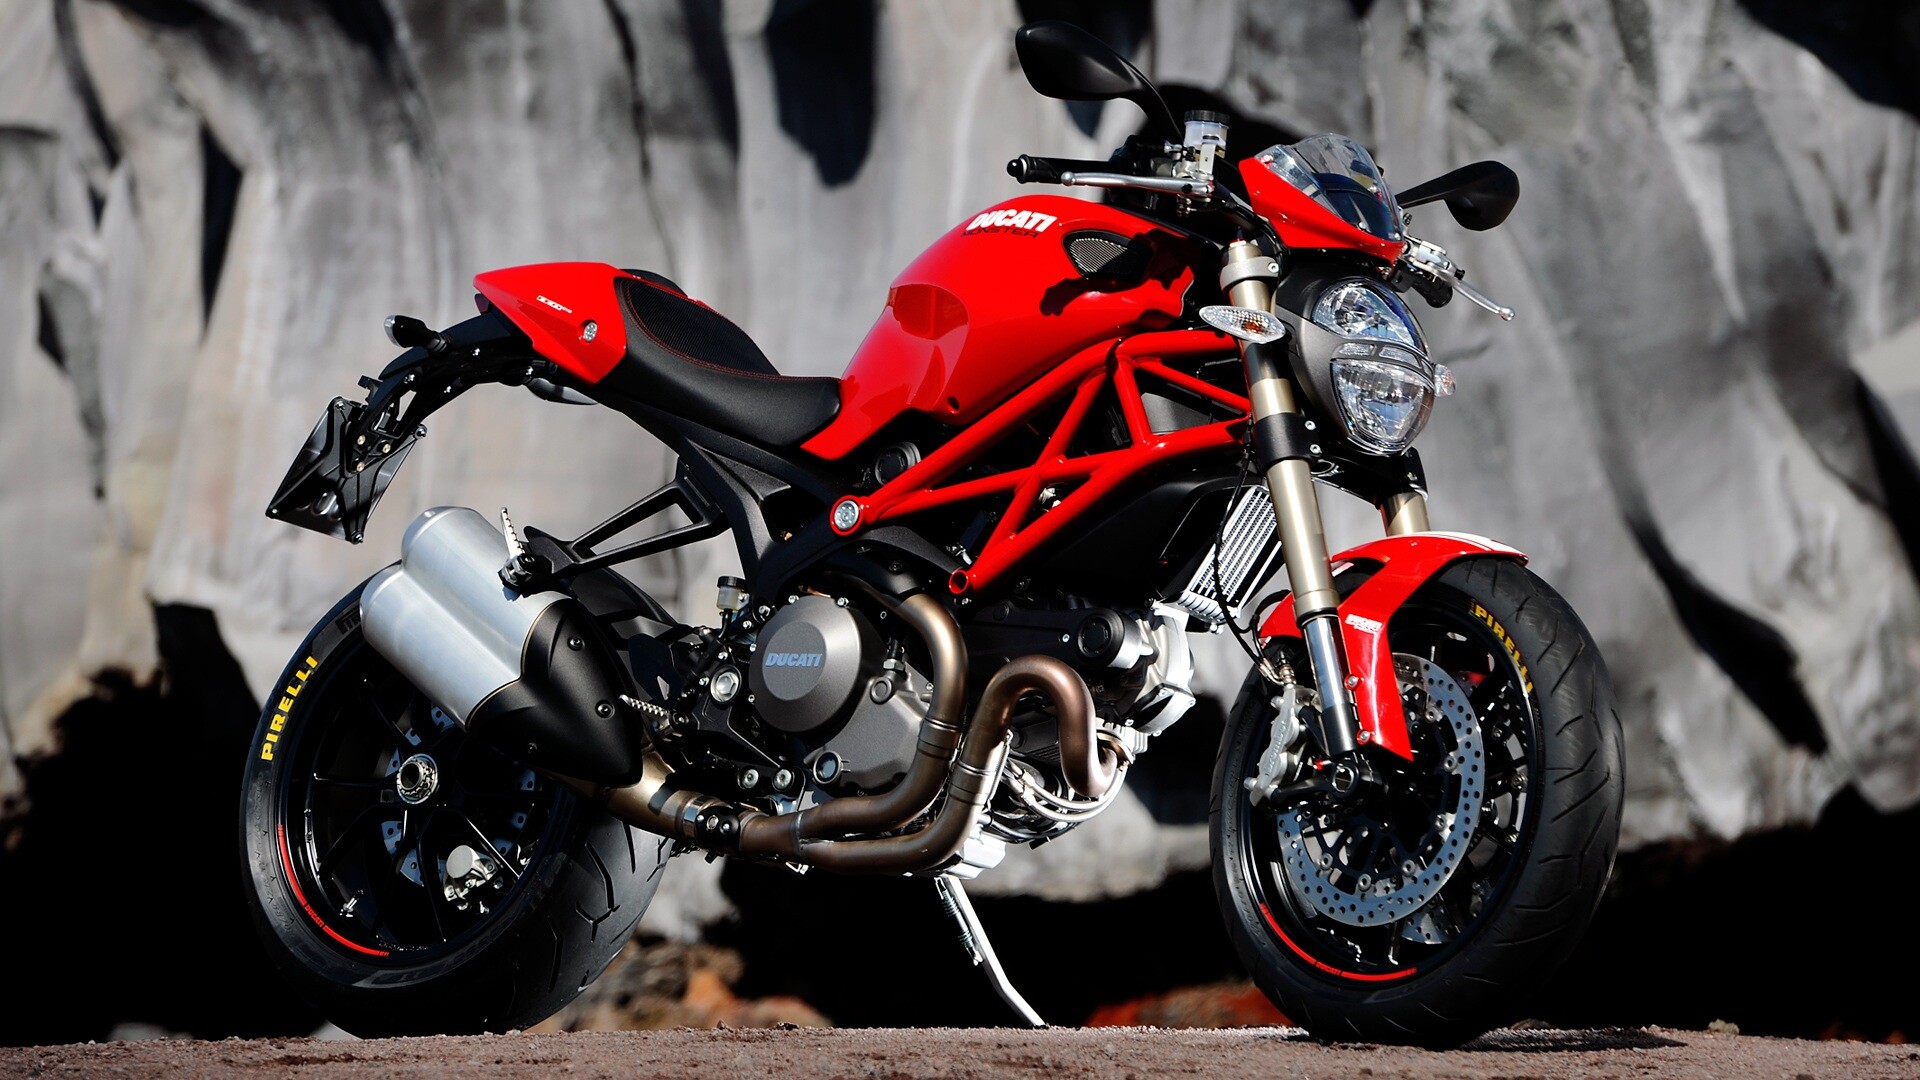 Ducati: Monster, The 2007 1098 model had a new engine called the Testastretta Evoluzione. 1920x1080 Full HD Wallpaper.